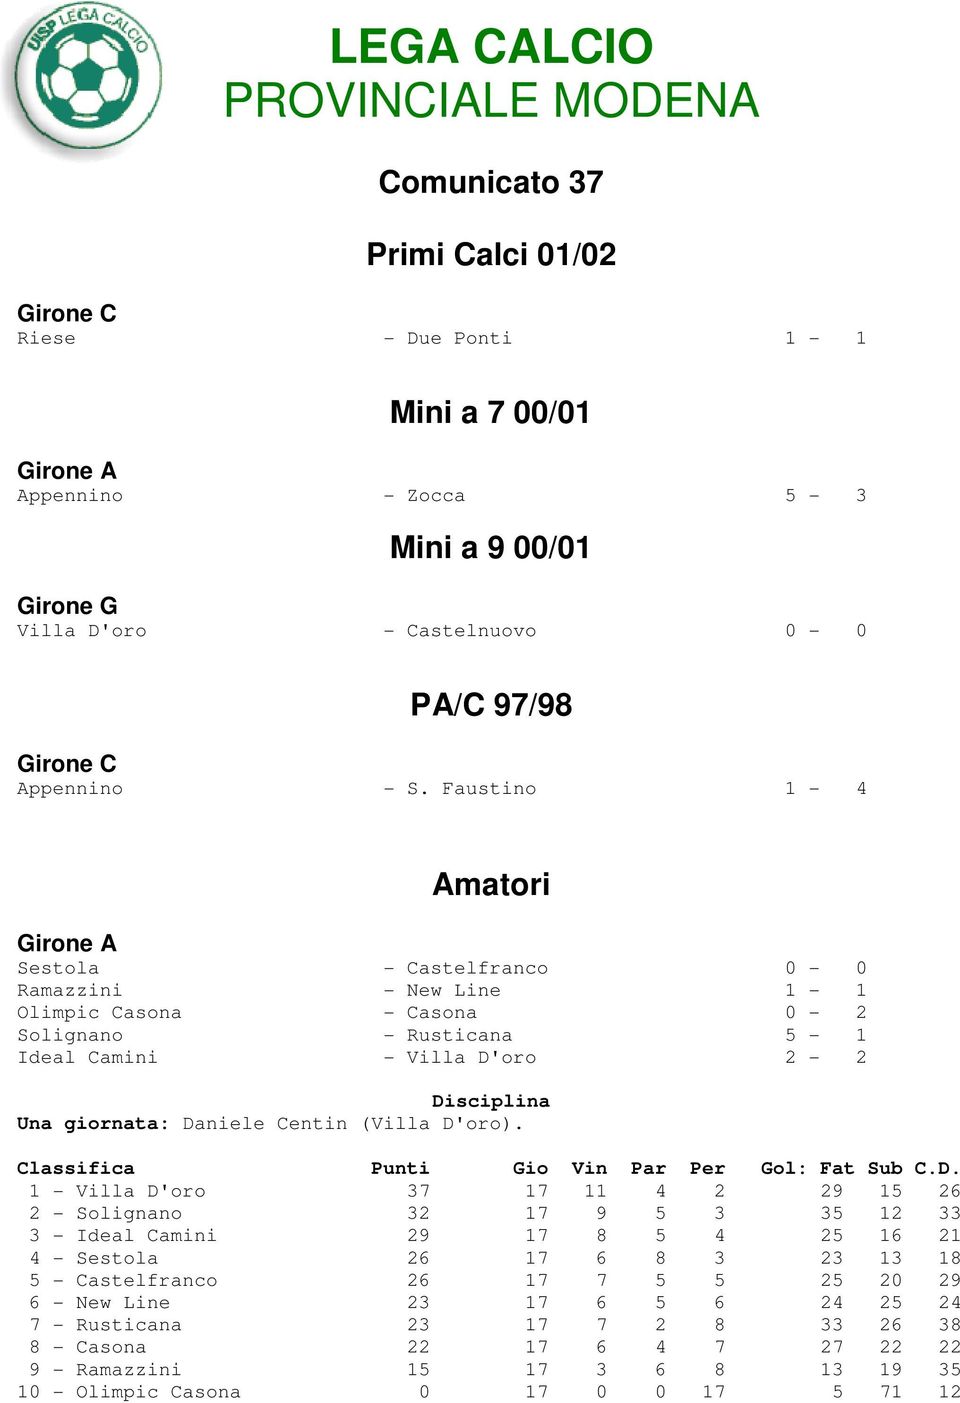 Faustino 1-4 Amatori Girone A Sestola - Castelfranco 0-0 Ramazzini - New Line 1-1 Olimpic Casona - Casona 0-2 Solignano - Rusticana 5-1 Ideal Camini - Villa D'oro 2-2 Una giornata: Daniele Centin